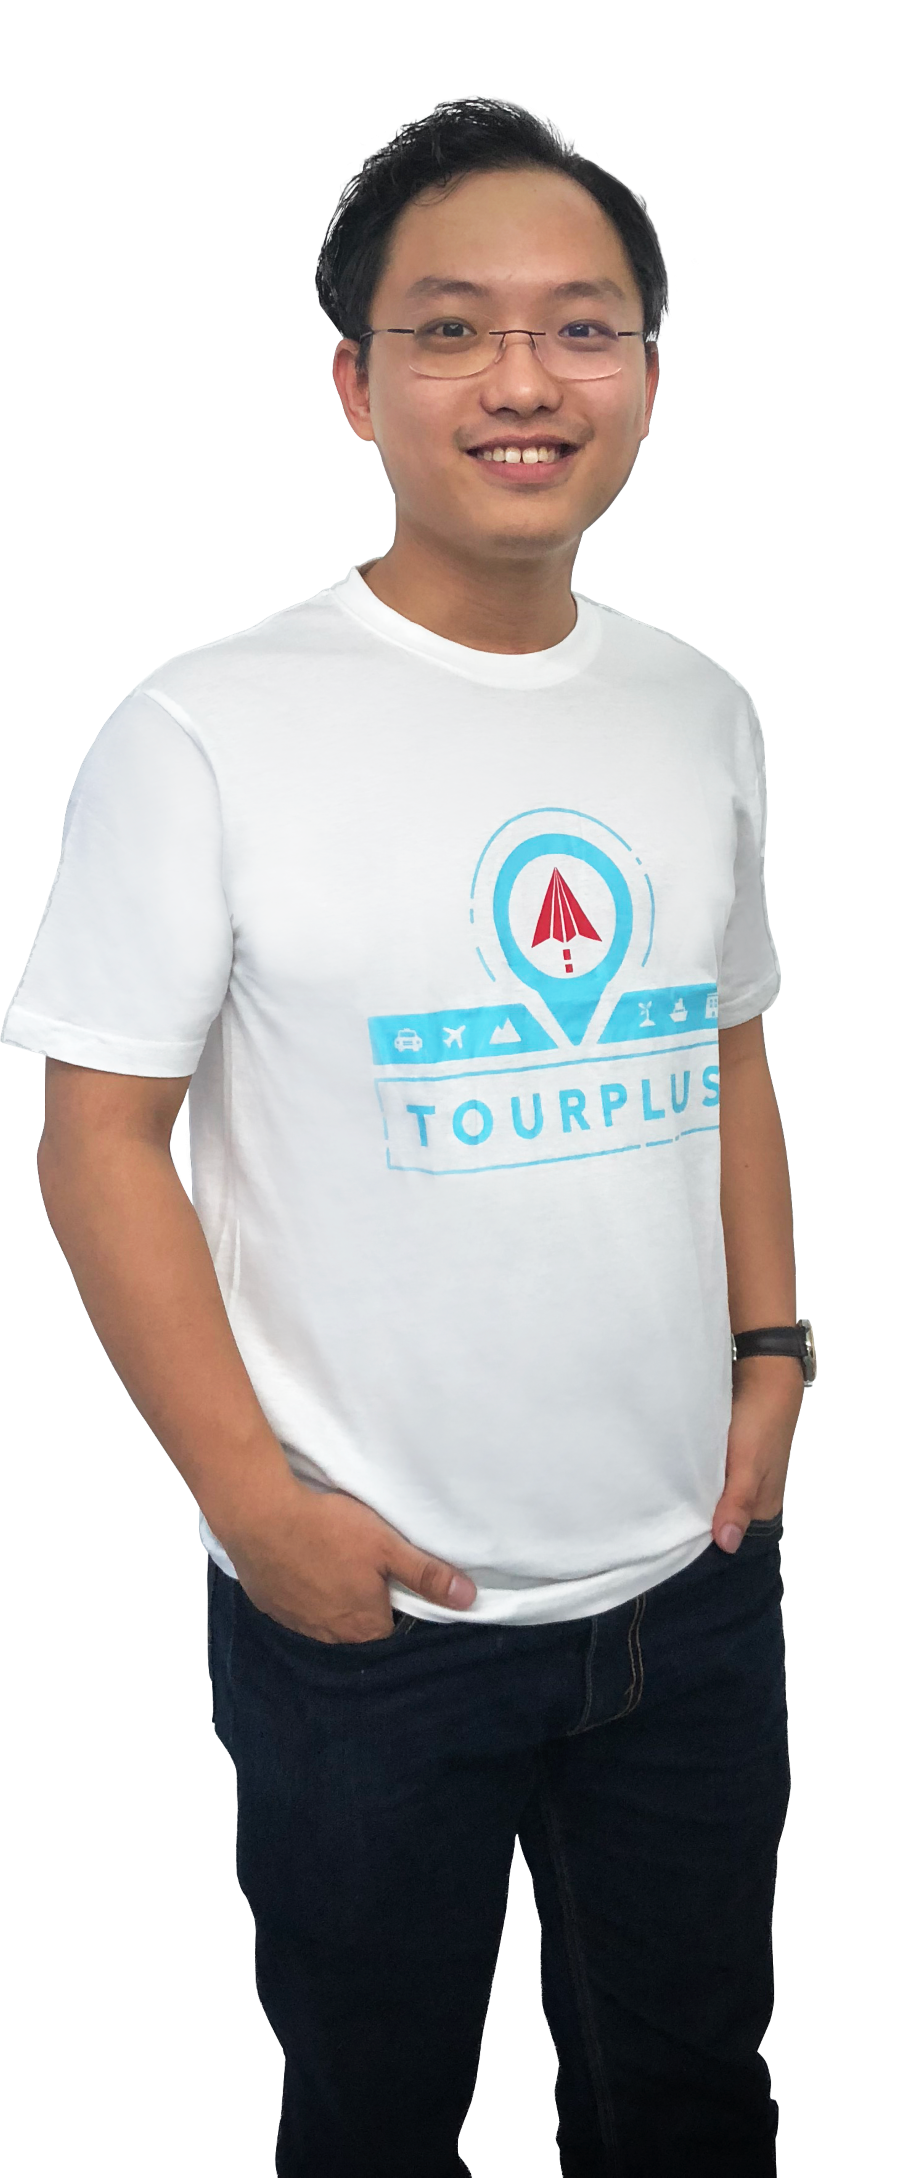 tourplus